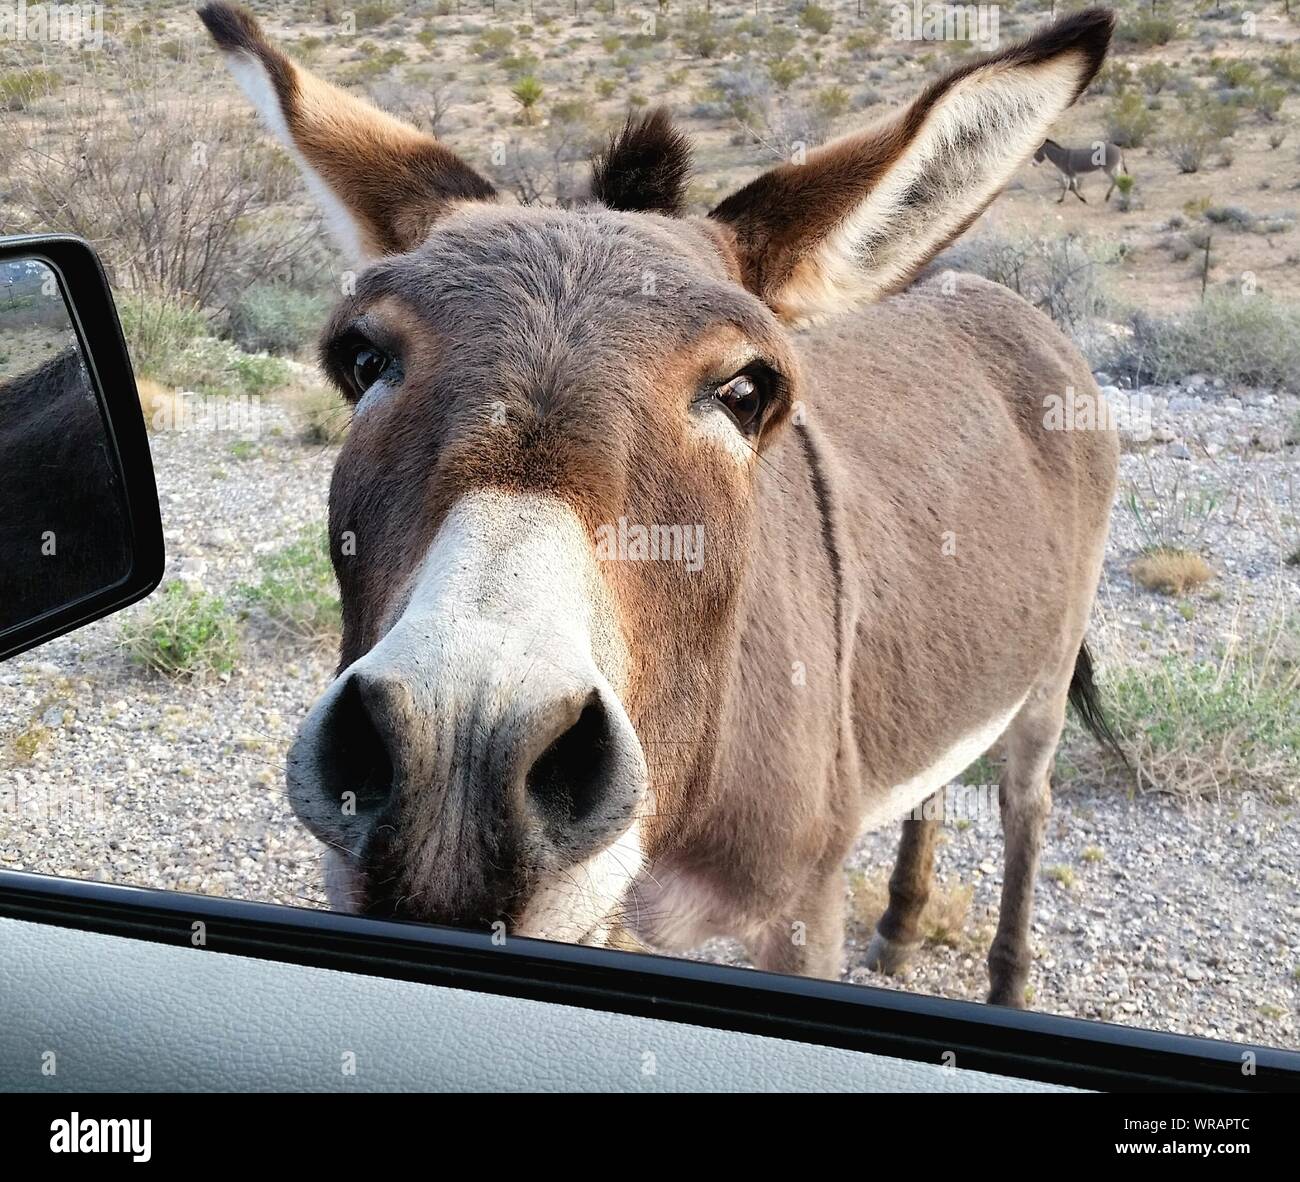 Donkey Car Window Stock Photos & Donkey Car Window Stock Images ...